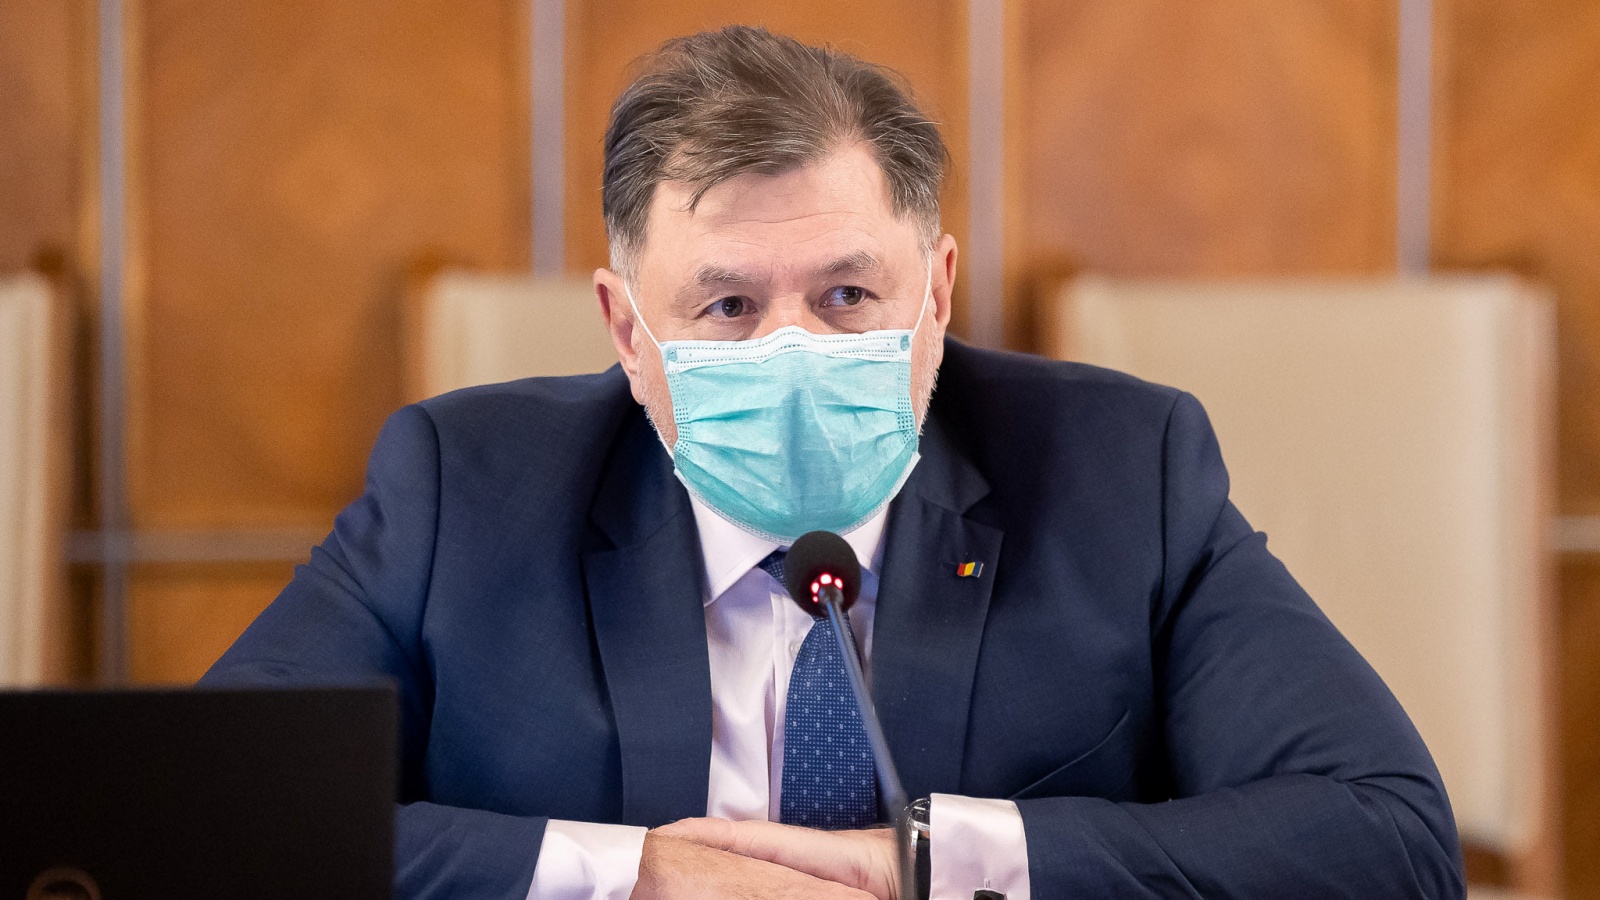 L'allarme LAST MINUTE del Ministro della Sanità colpisce i rumeni di tutto il Paese